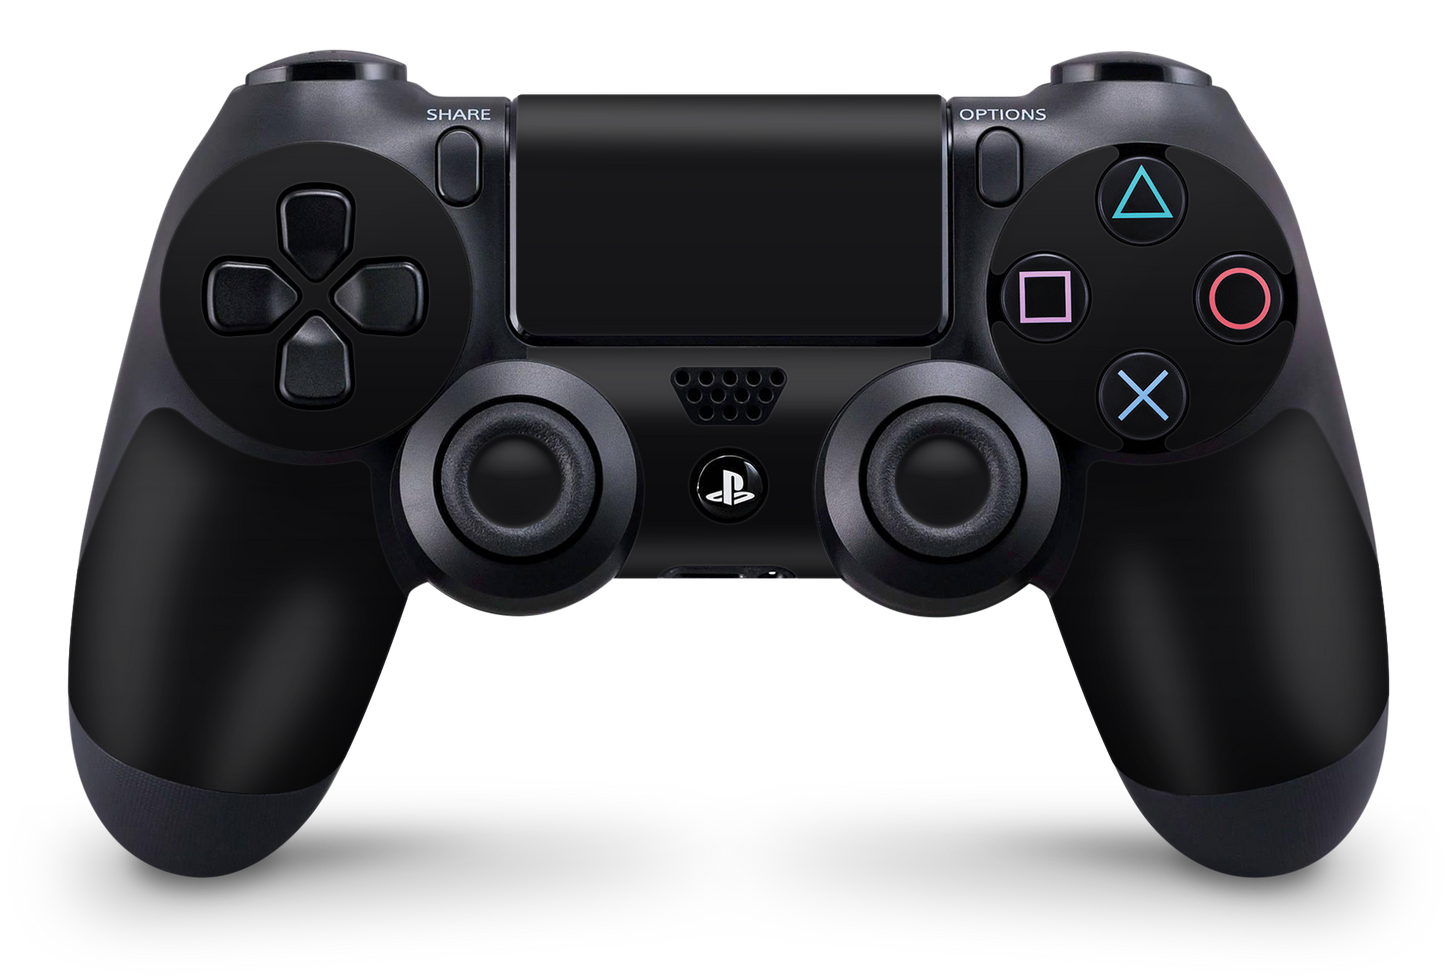 PS4 Playstation 4 Controller Skins - Vinyl Skin Aufkleber für Gaming Controller Solid State black Aufkleber Skins4u   